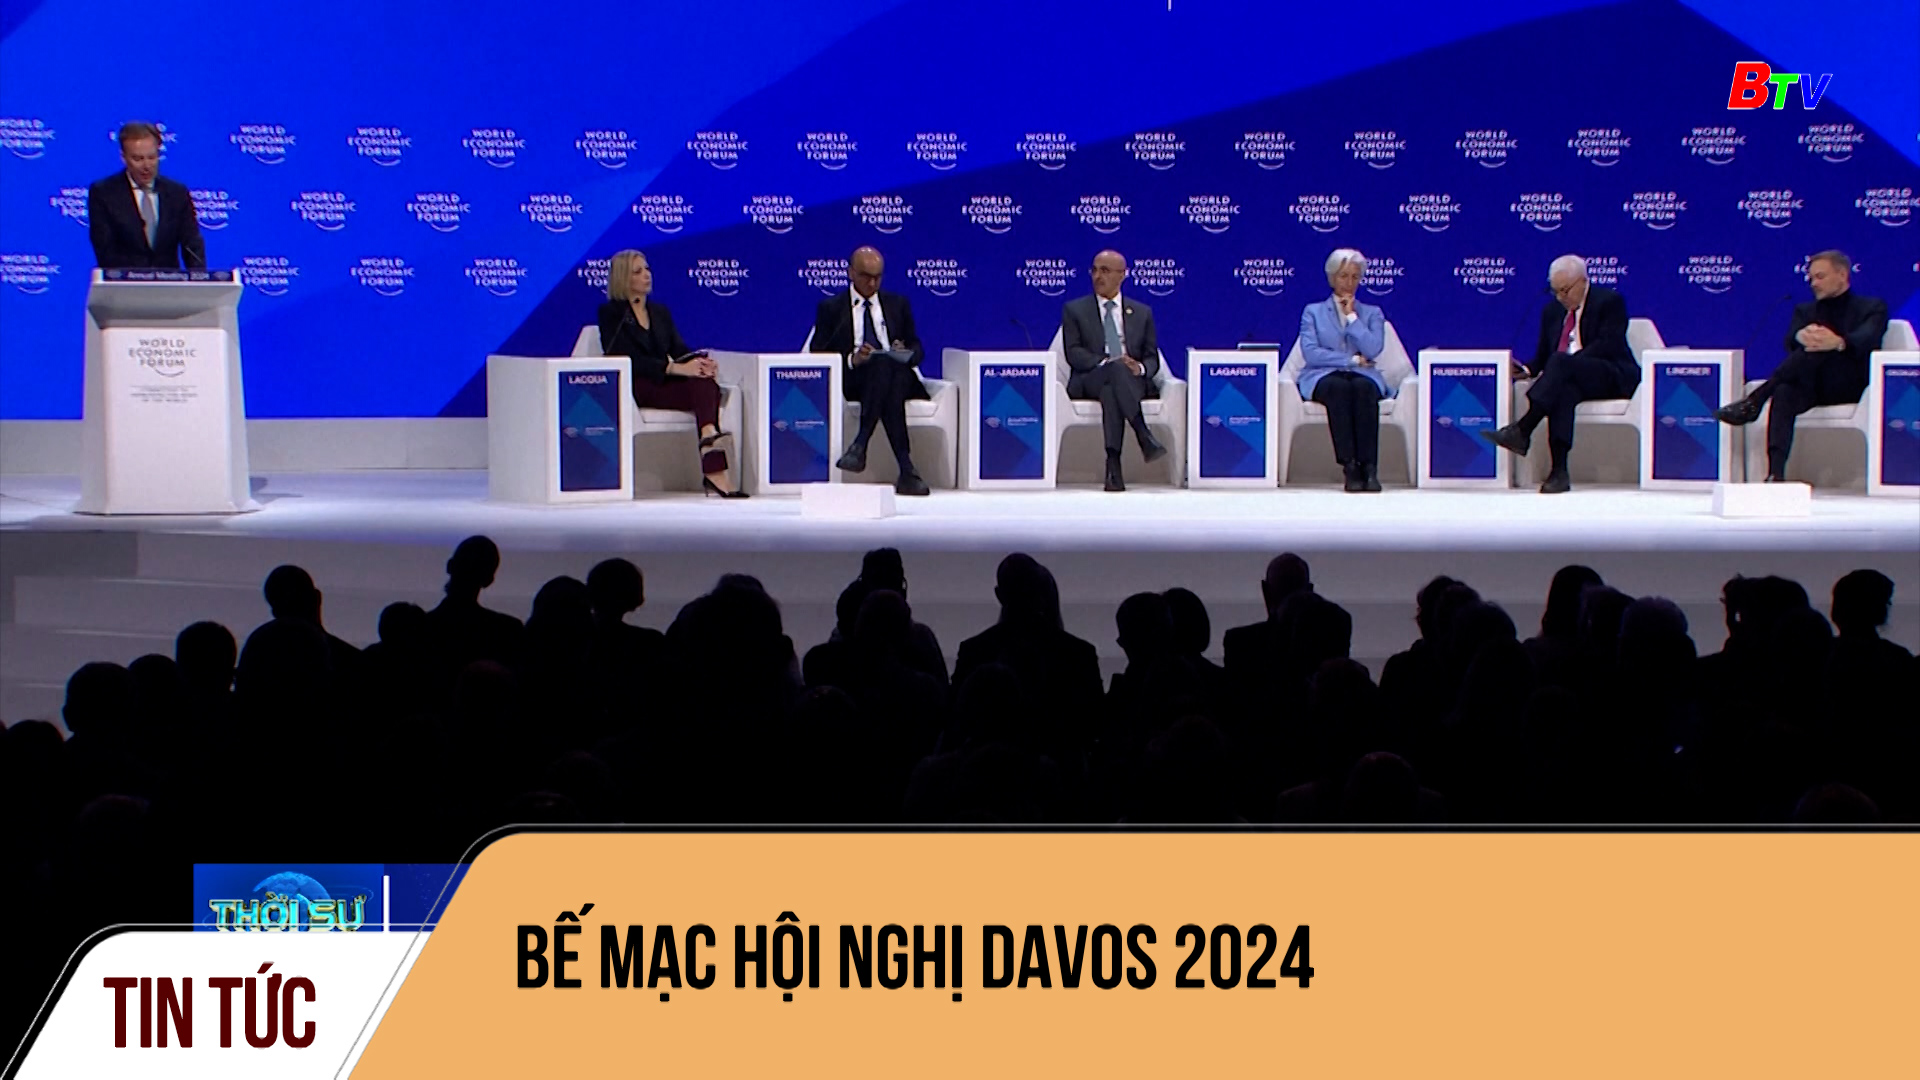 Bế mạc hội nghị Davos 2024